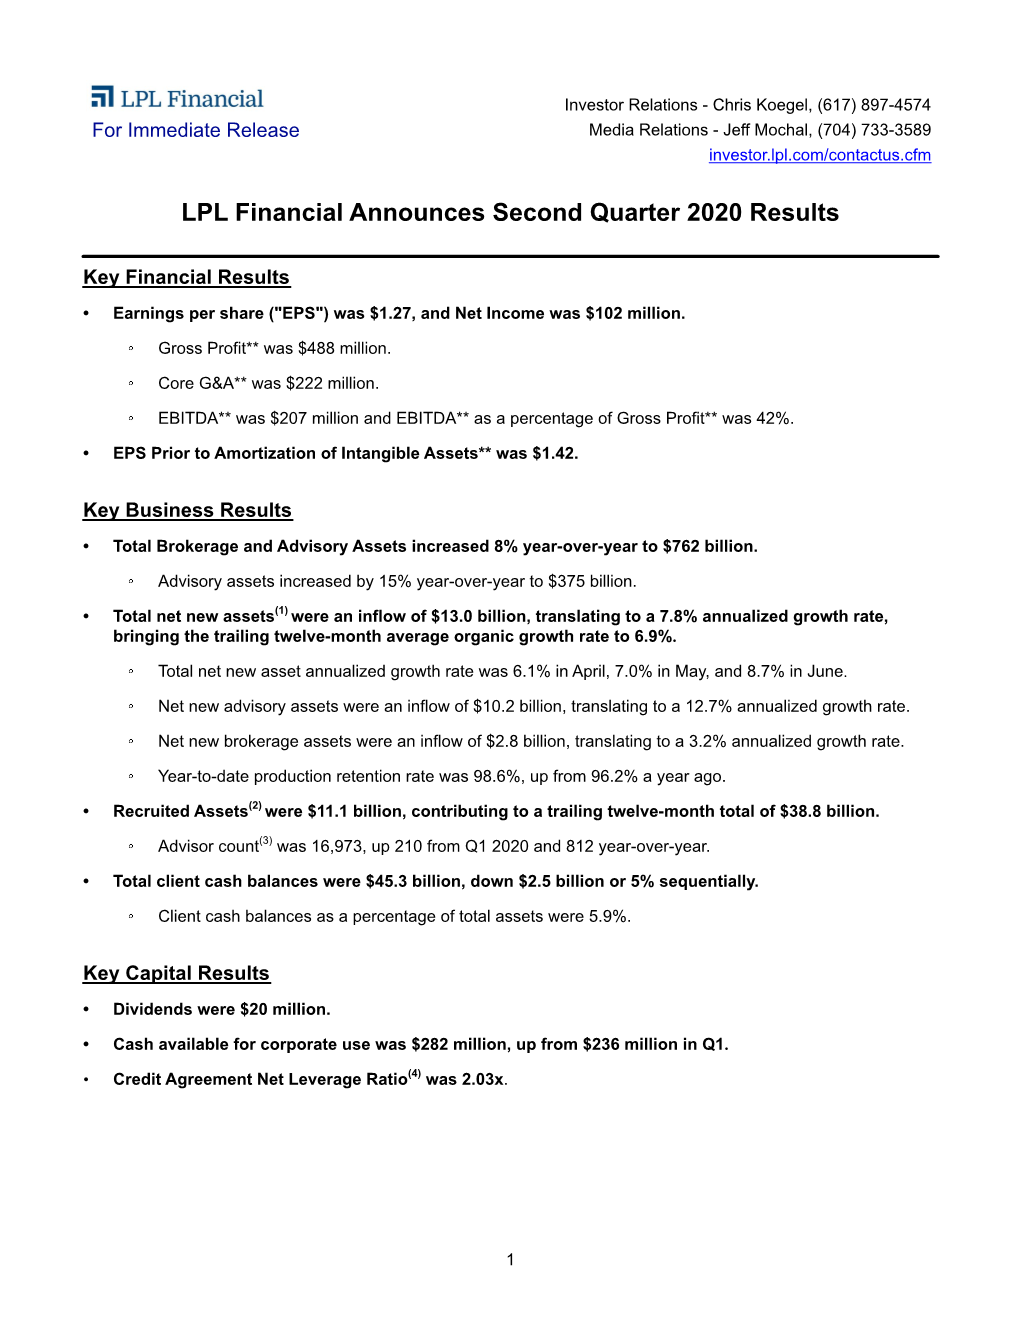 LPL Financial Announces Second Quarter 2020 Results